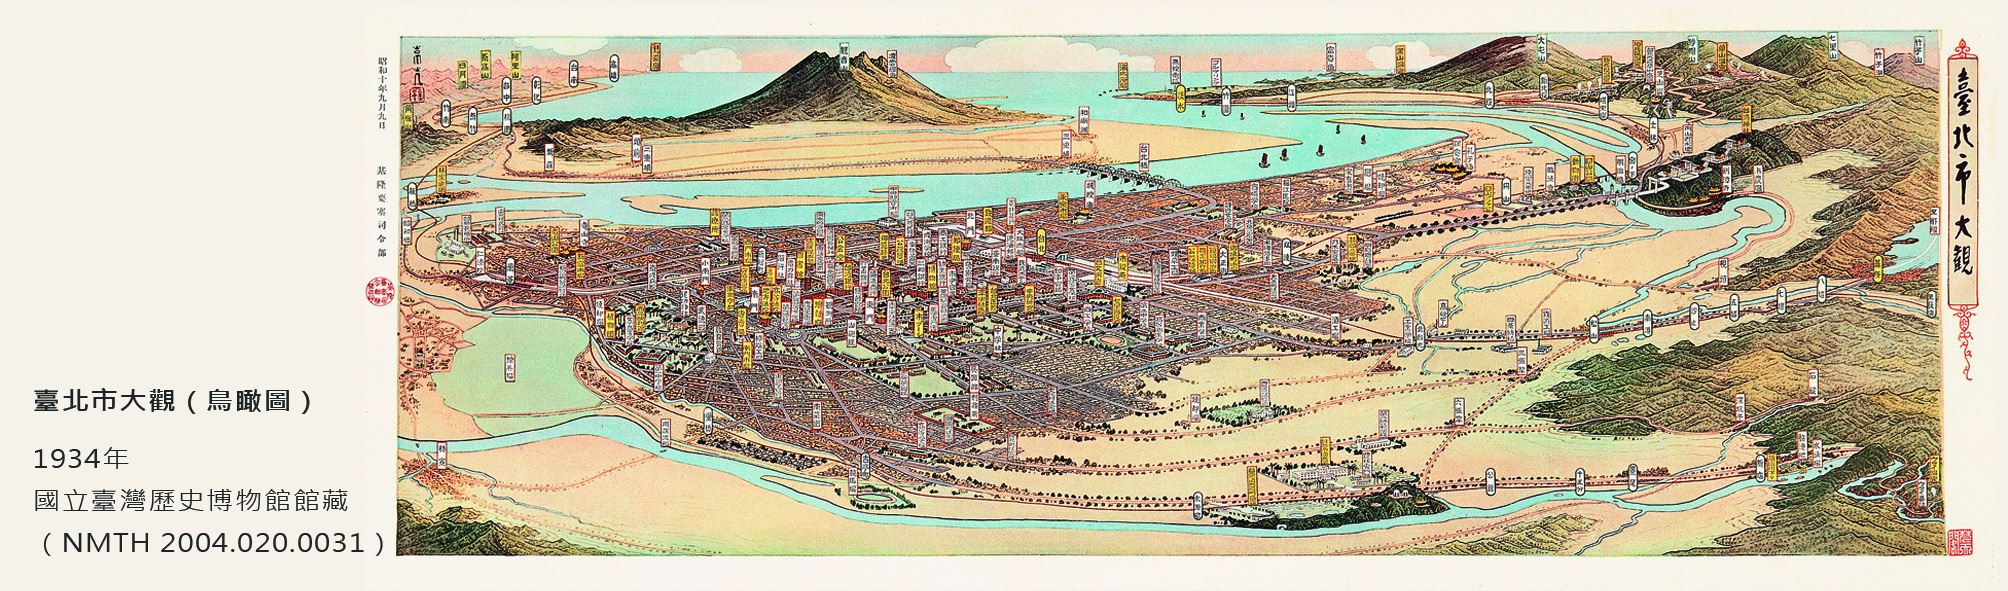 地圖書籤6(1934年-台北)-正